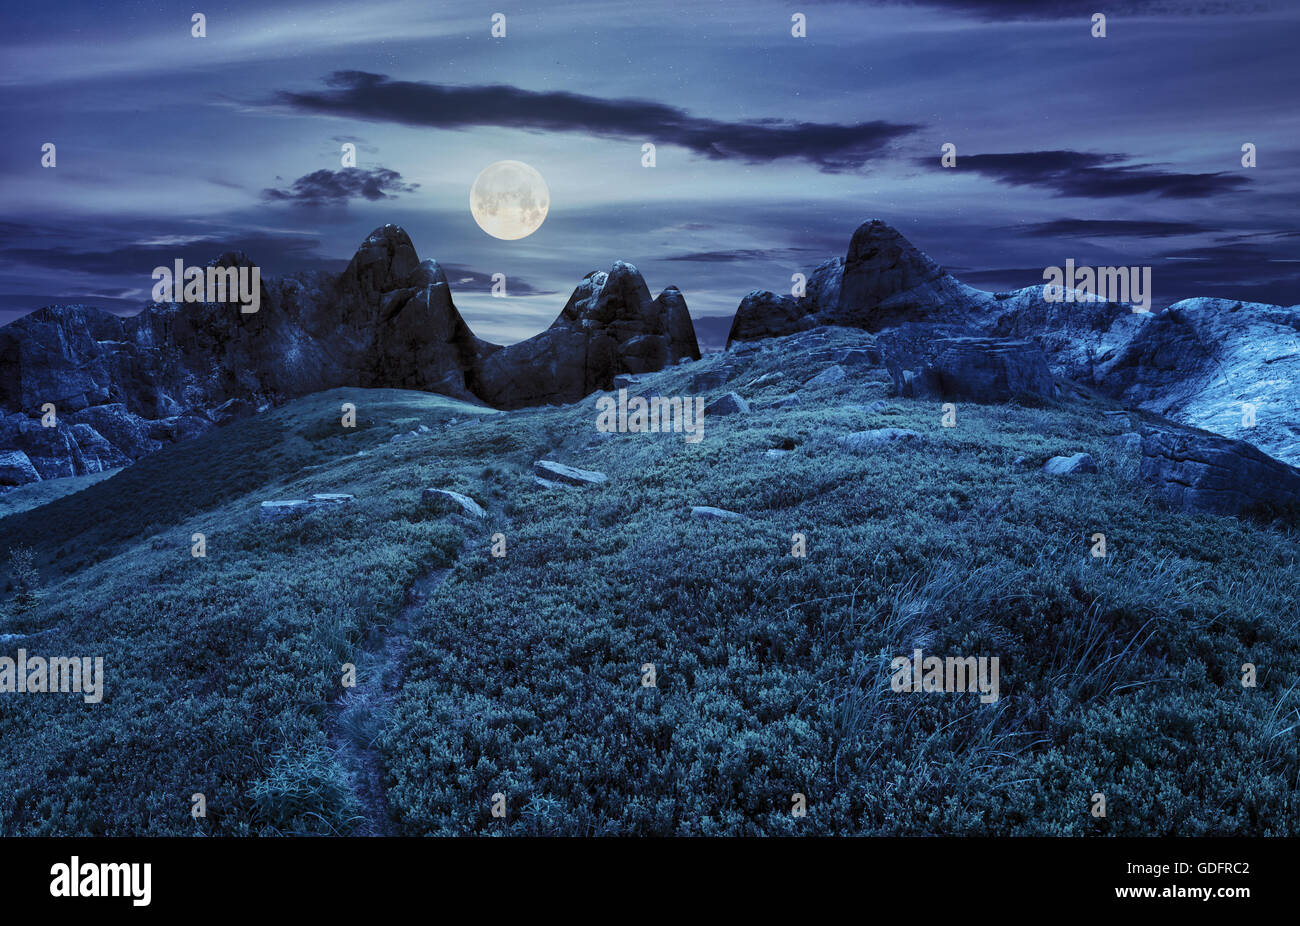 zusammengesetzte Landschaft mit Weg durch Hügel Wiese mit weißen Spitzen Felsbrocken in der Nähe von Cgi Berggipfel in der Nacht bei Vollmond li Stockfoto